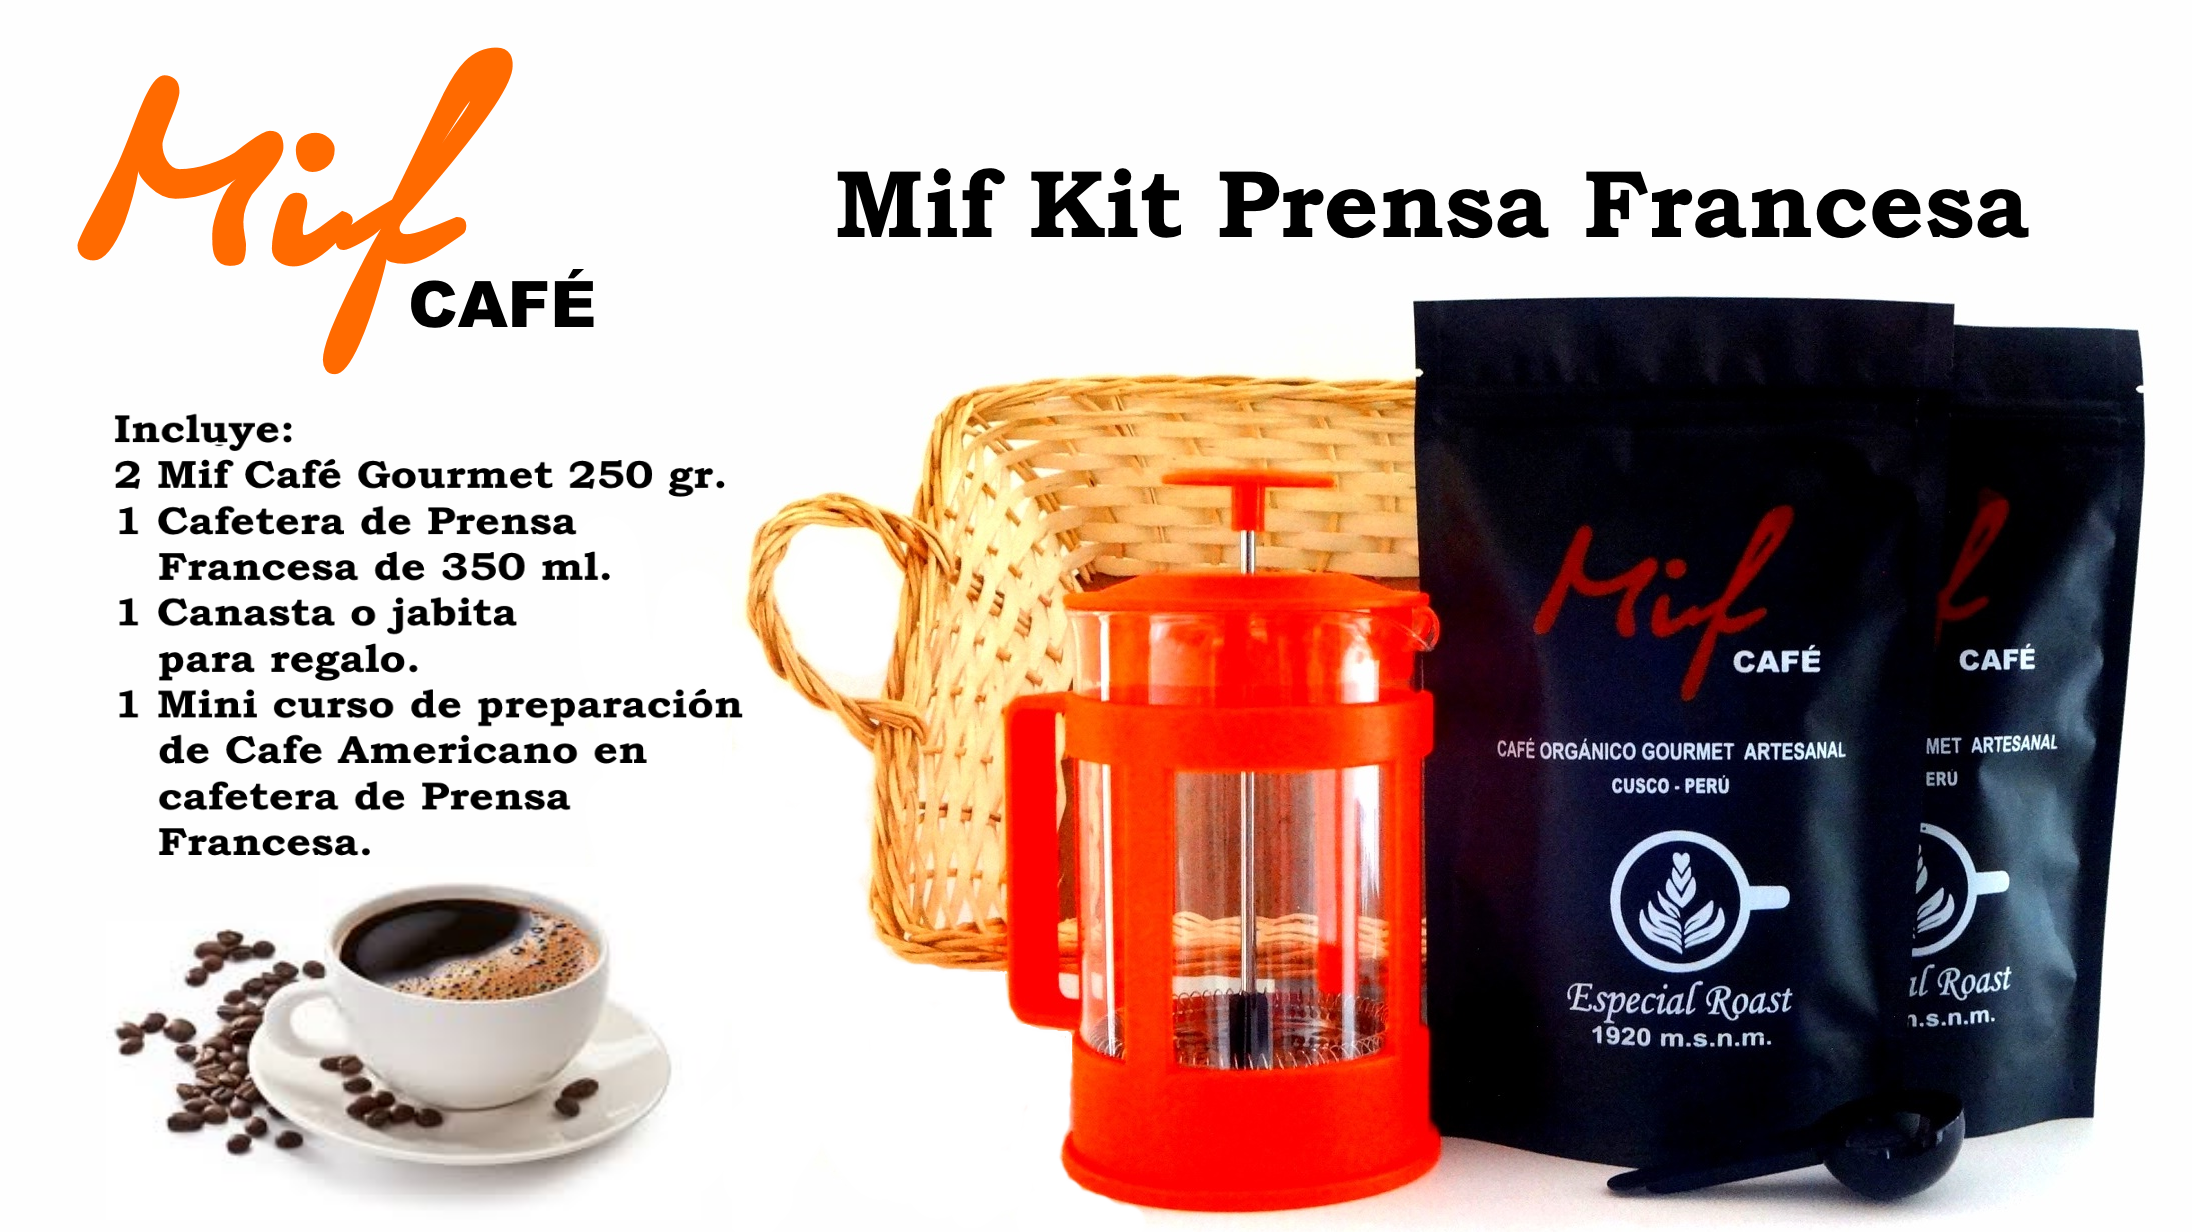 Kit Mif Café Prensa Francesa para regalo!